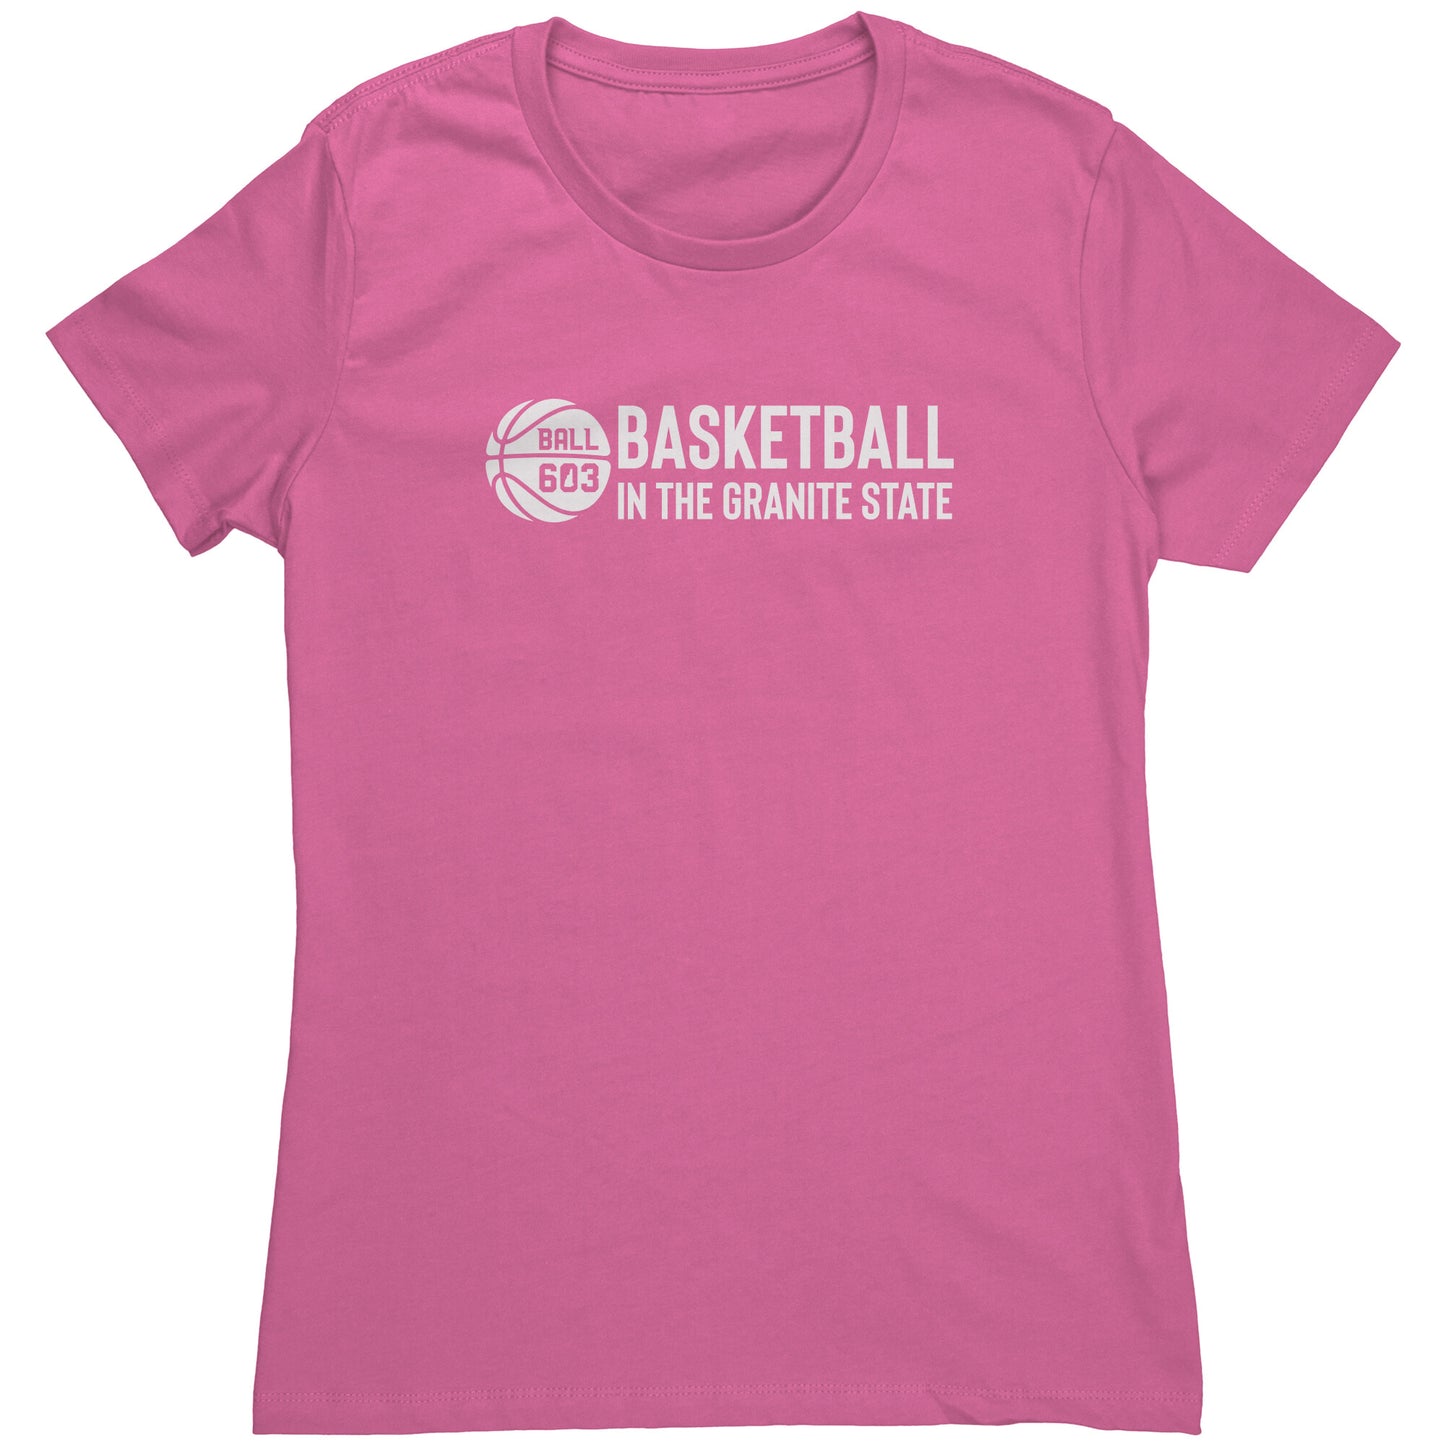 Ball 603 Women's T-Shirt